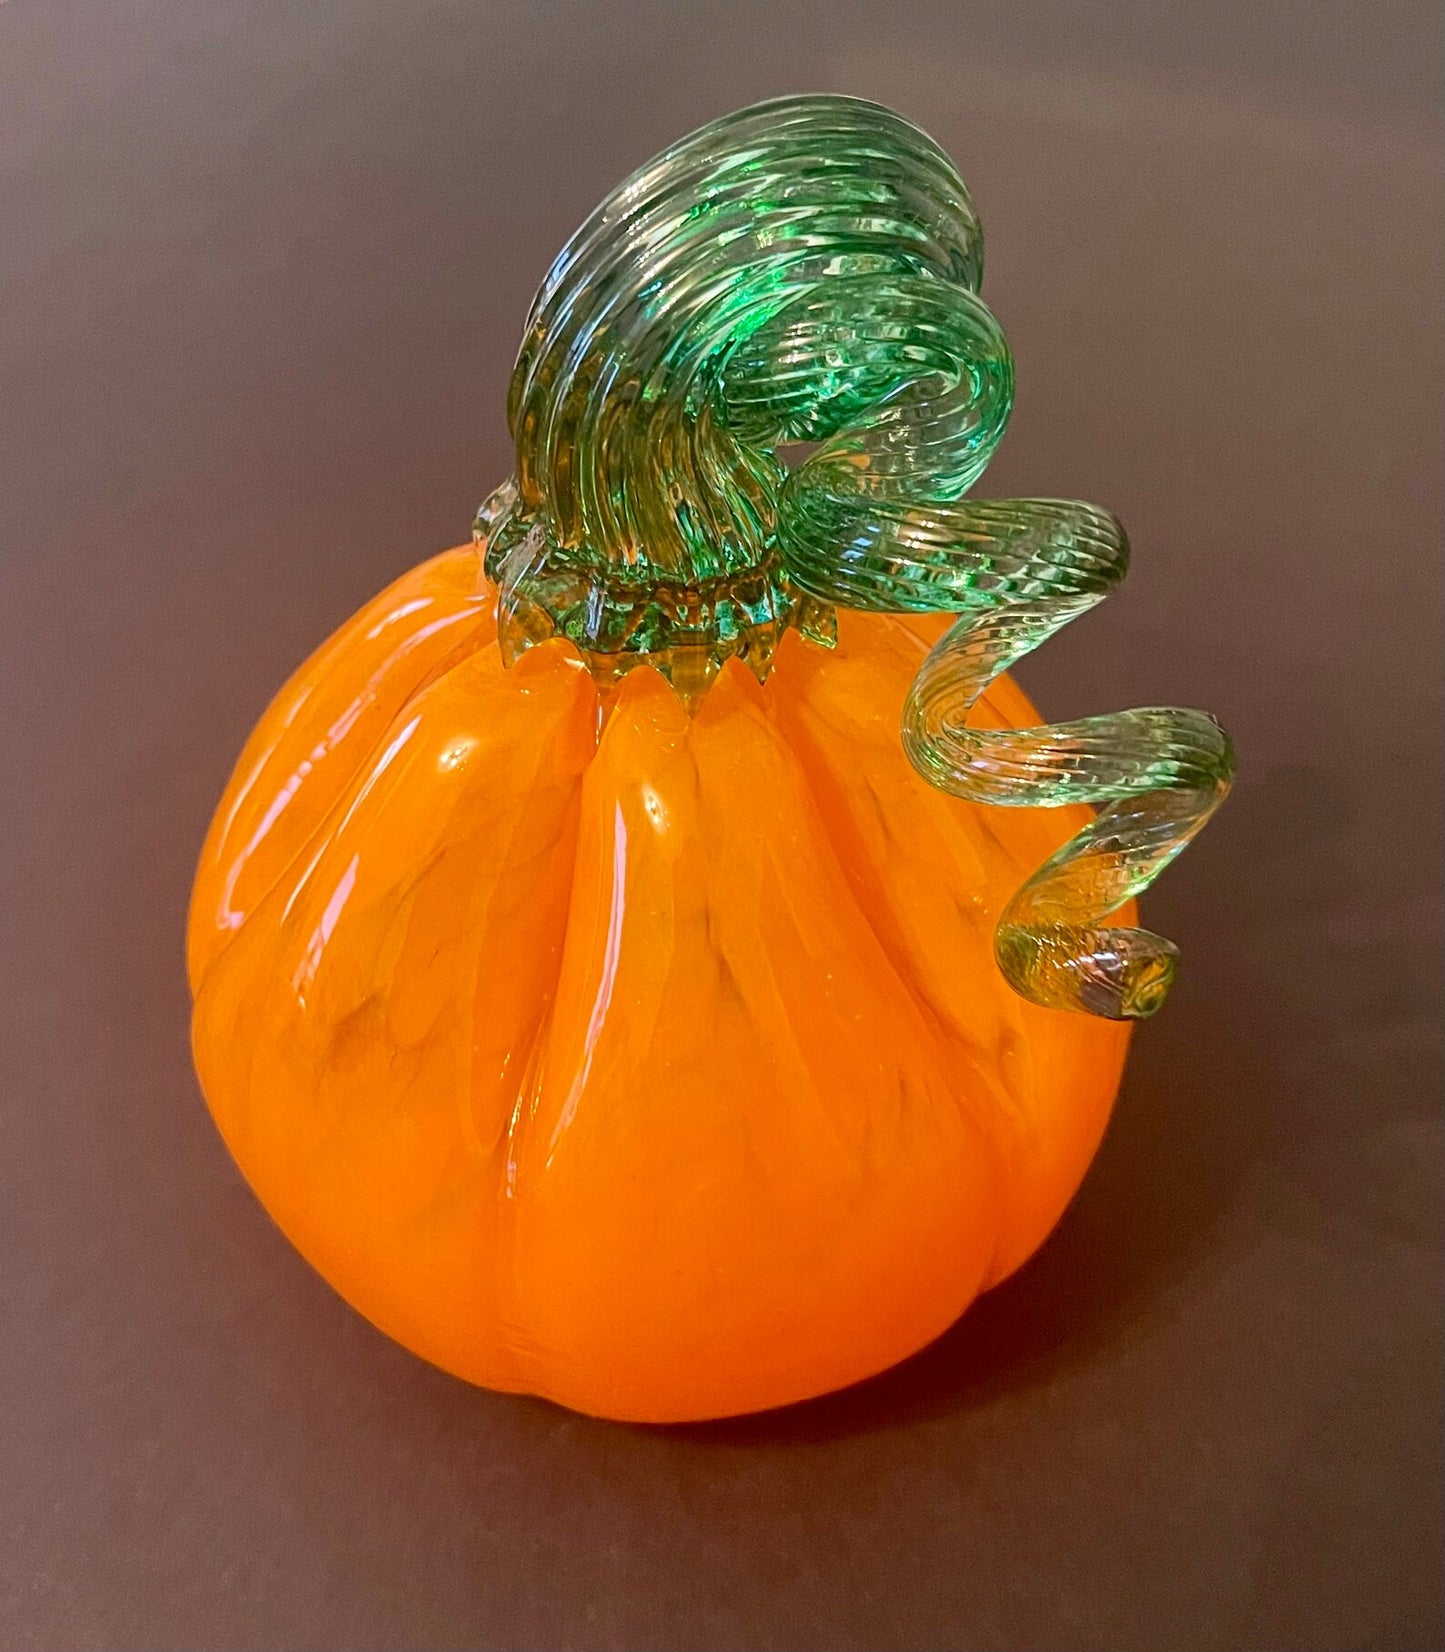 Hand Crafted Medium Pumpkin Sculpture by Boise Art Glass